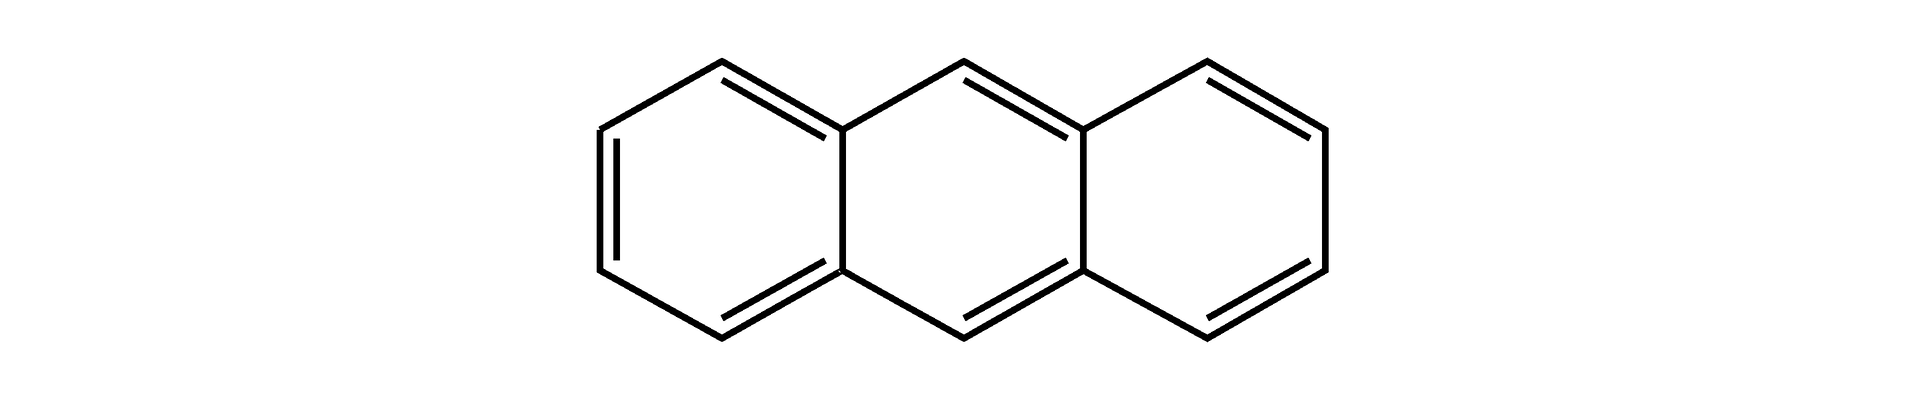 Na ilustracji jest wzór: składa się z połączonych ze sobą trzech sześcioczłonowych pierścieni. Pierwszy pierścień (od lewej strony) ma trzy wiązania podwójne, kolejne pierścienie mają po dwa wiązania podwójne. 